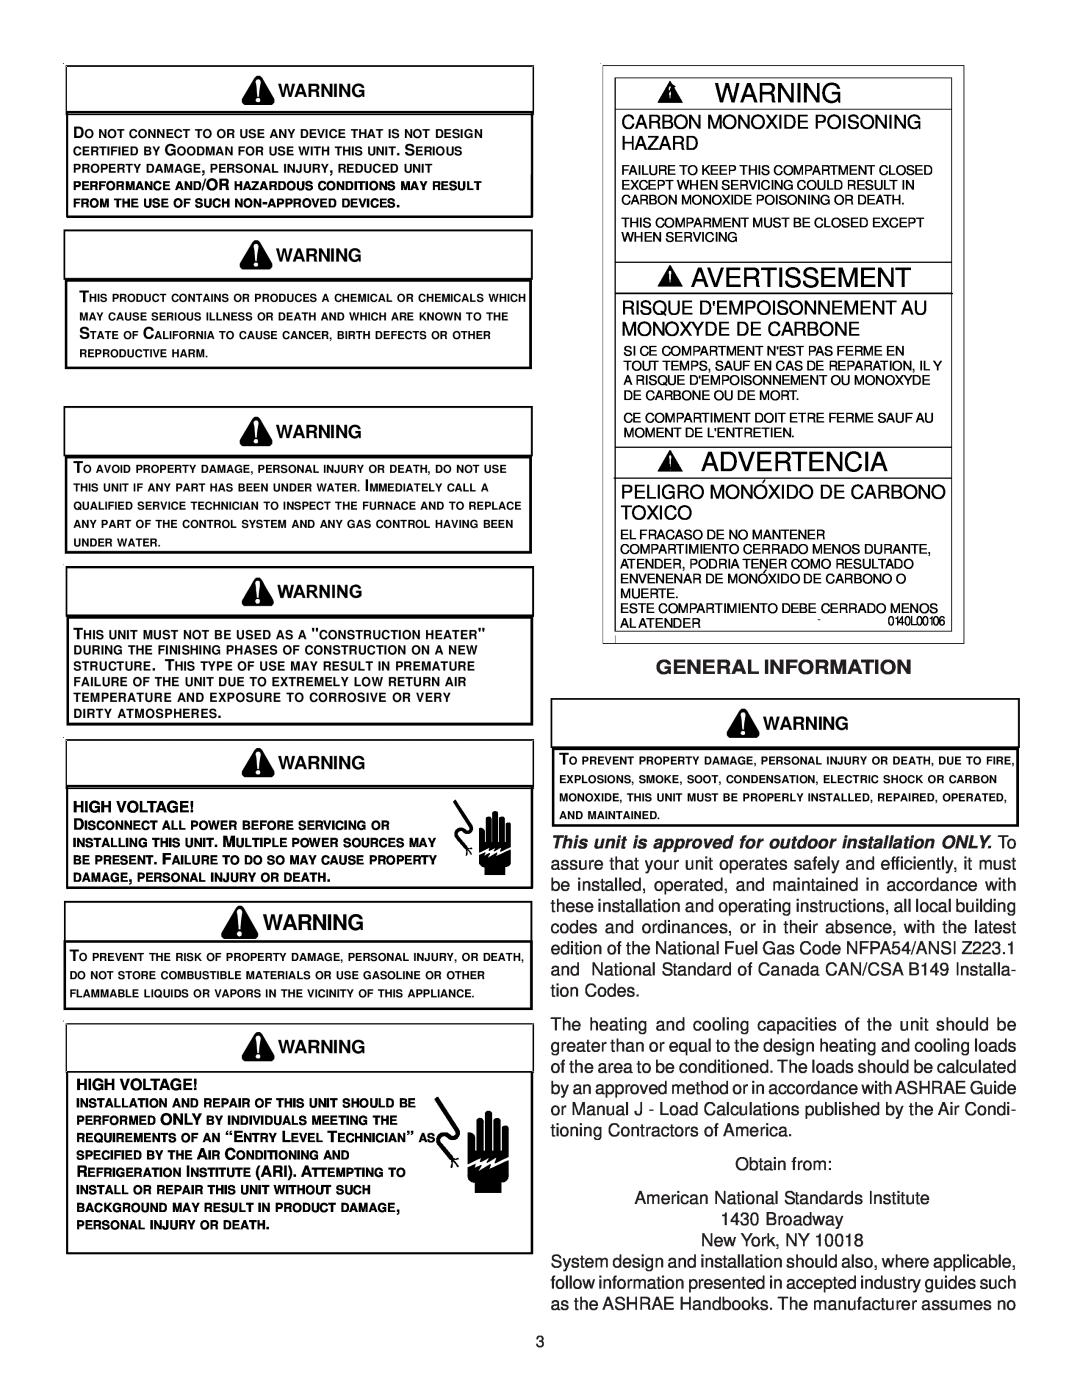 Goodman Mfg CPG SERIES Avertissement, Advertencia, General Information, Carbon Monoxide Poisoning Hazard 